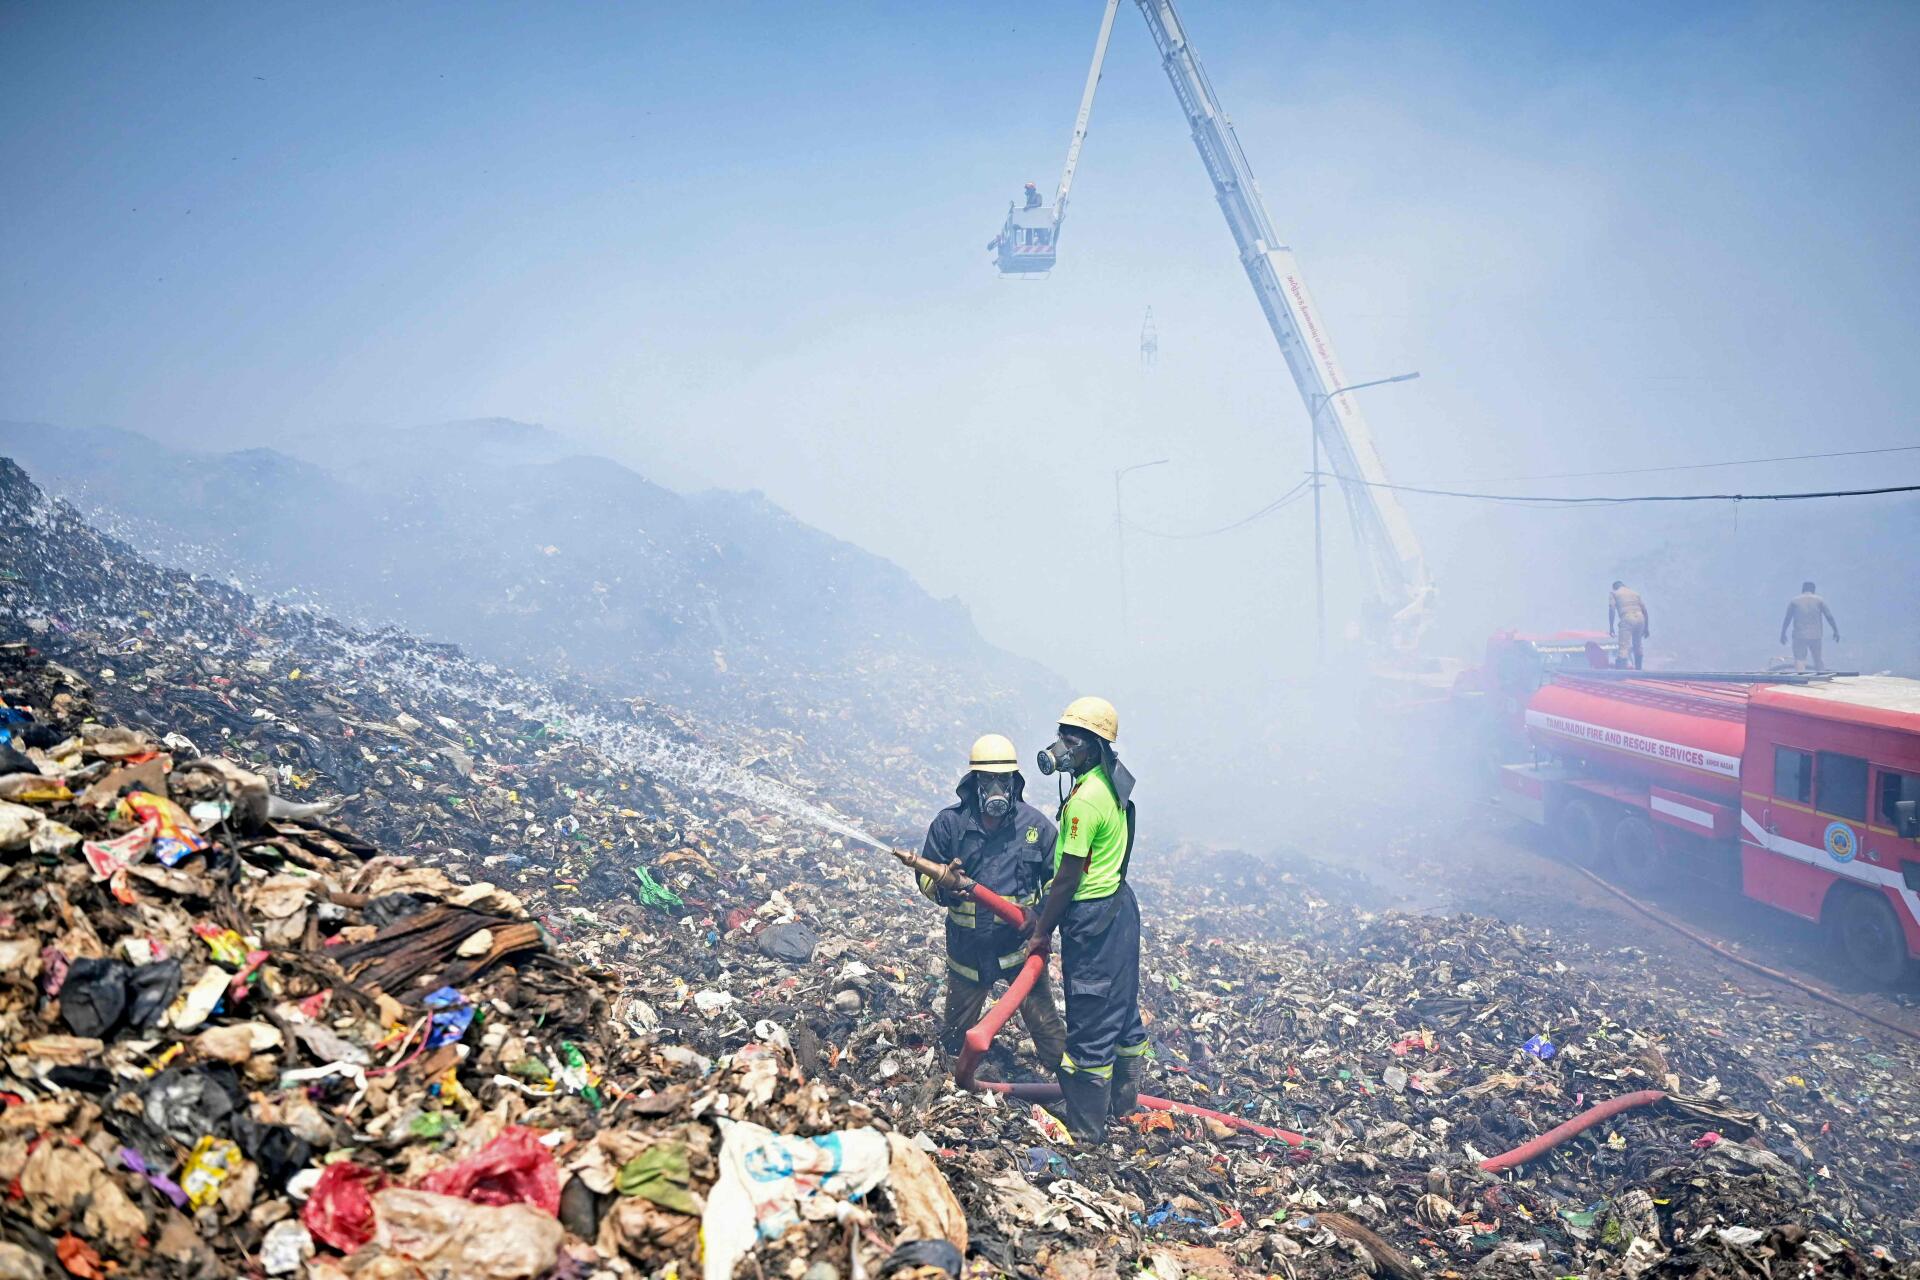 El 29 de abril de 2022, se produjo un incendio en el depósito de basura de Perungudi en Chennai, Tamil Nadu, y los bomberos intentan extinguir los desechos en llamas.